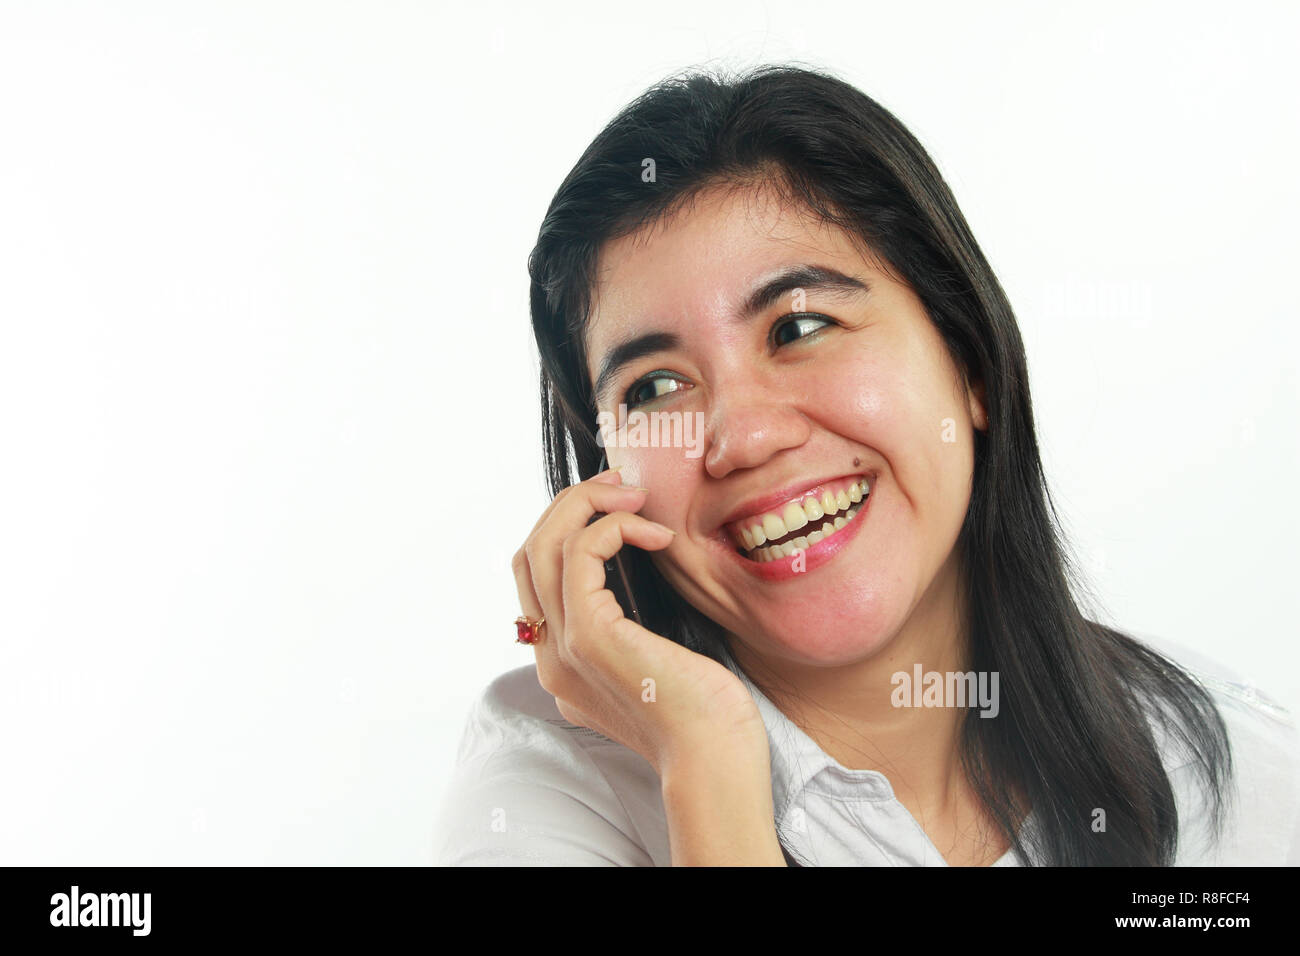 Foto Portrait von eine nette junge asiatische Frau mit Mole sah sehr glücklich und lächelnd beim Gespräch mit ihrem Freund am Telefon auf weißem Hintergrund Stockfoto